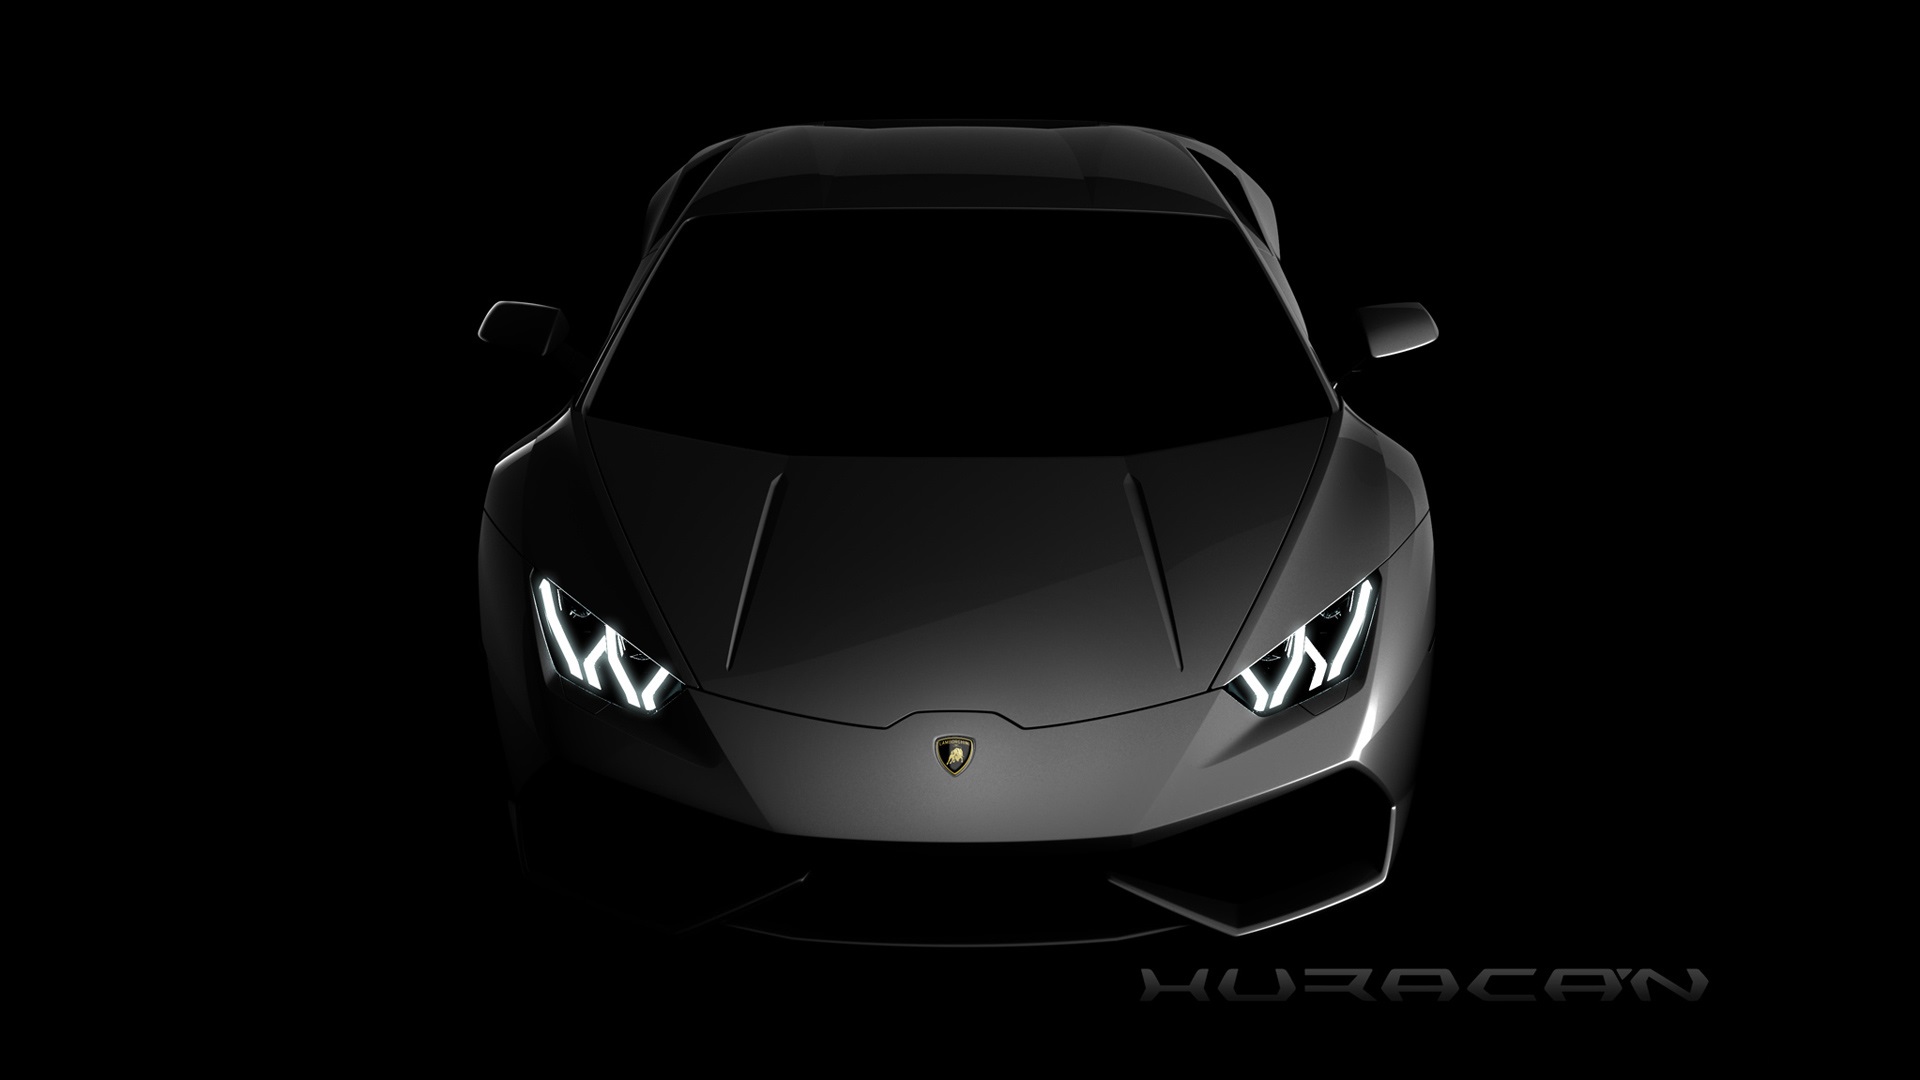 2015-Lamborghini-Huracan-Wallpaper-Hd-01.jpg